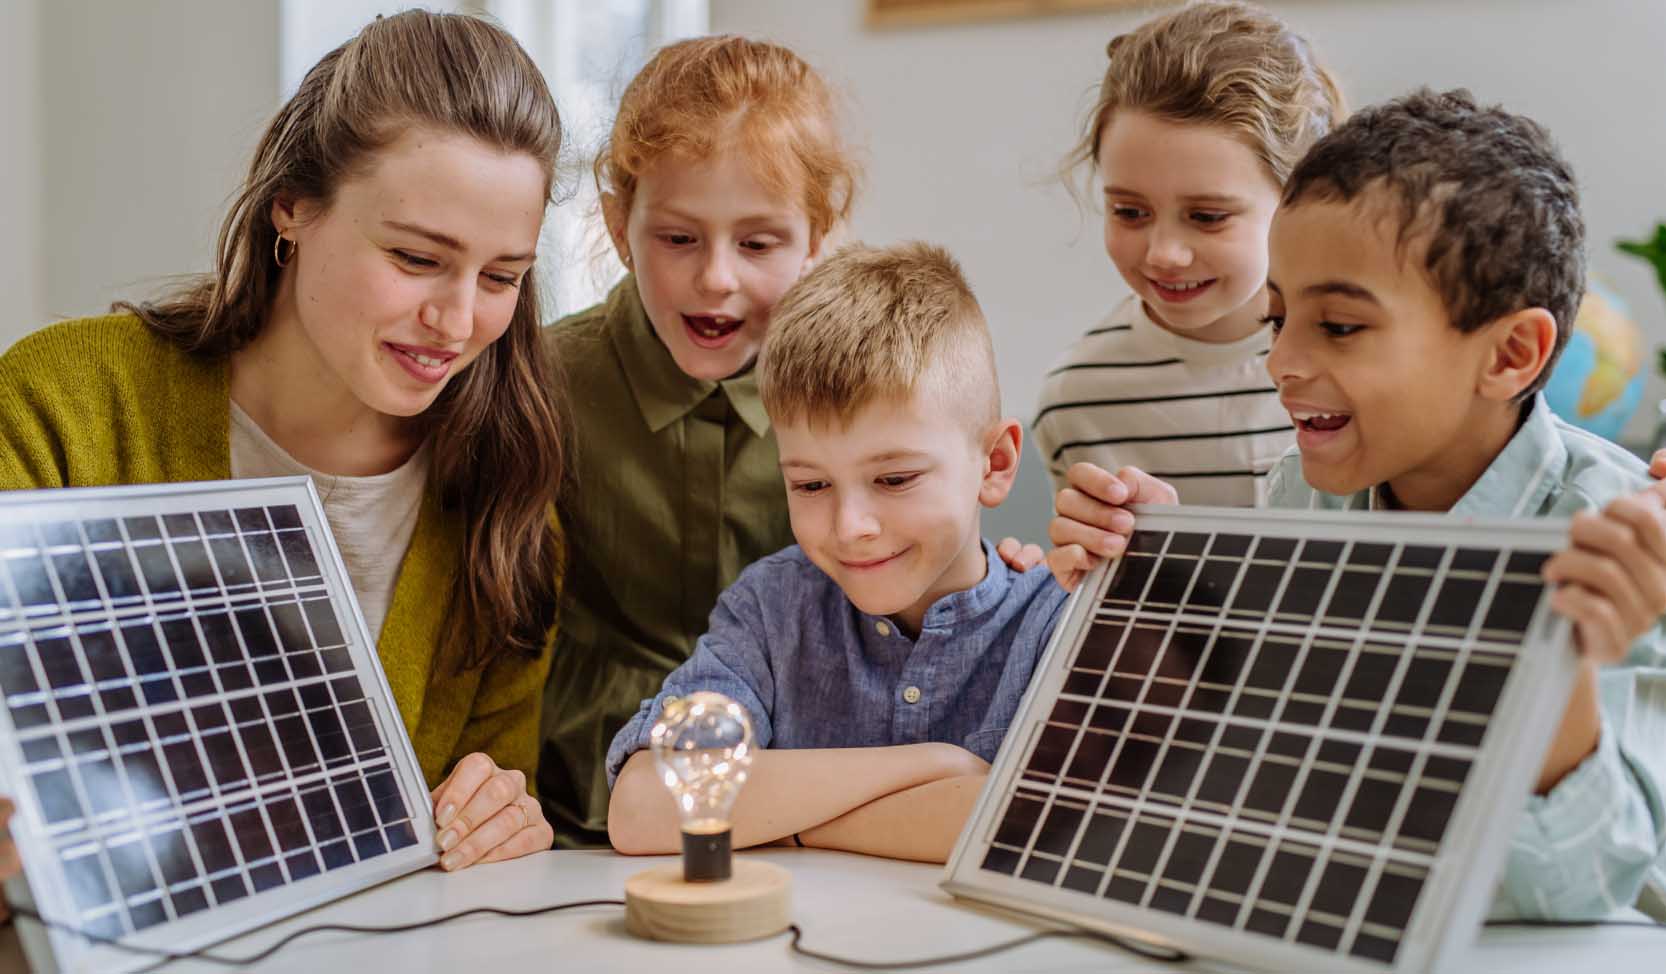 "Um den Planeten zu retten, zeigt eine Lehrerin einer Klasse von Kindern, wie man mit erneuerbaren Energien Strom erzeugt."  